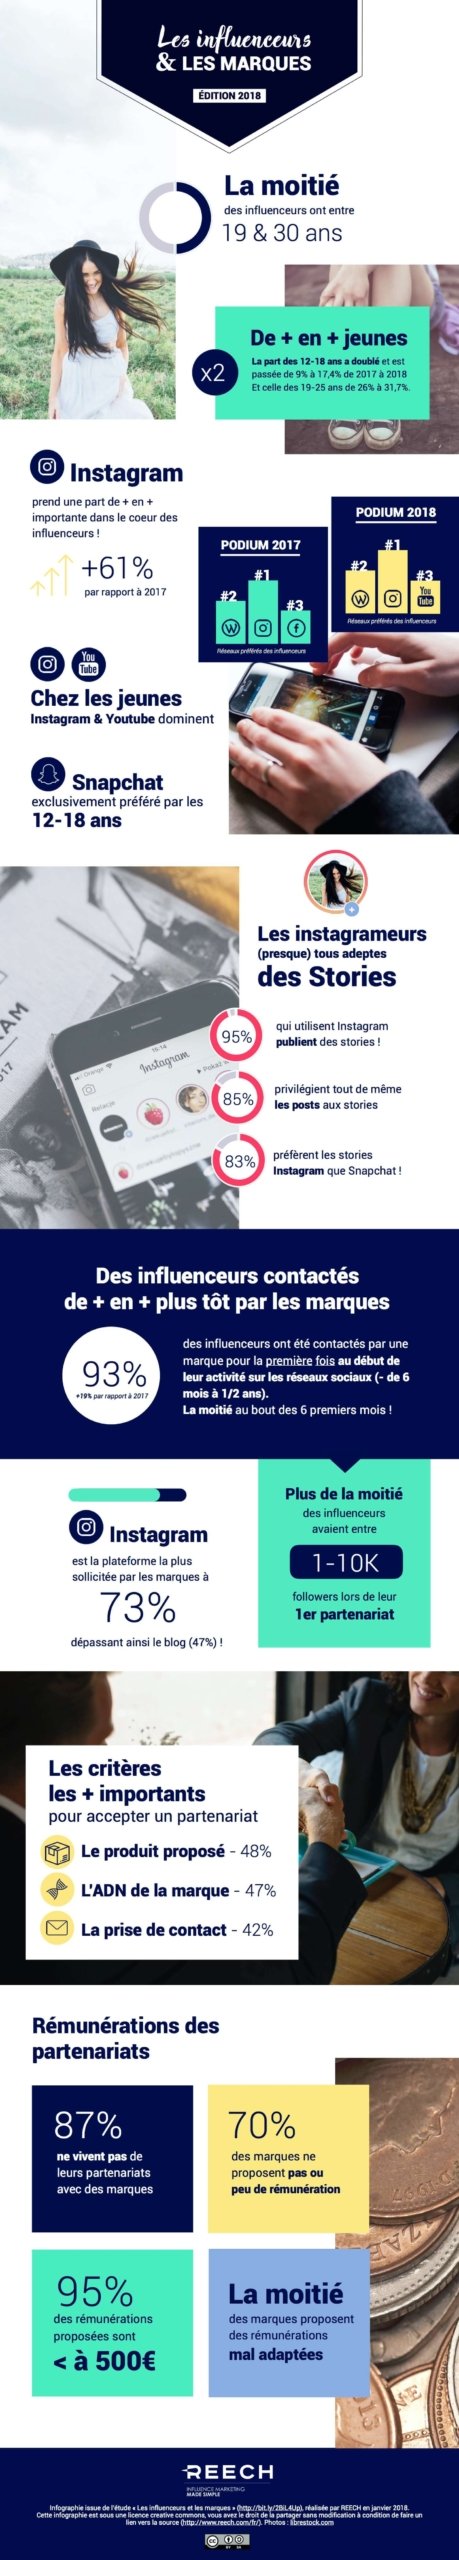 Infographie Reech sur les influenceurs et marques en 2018